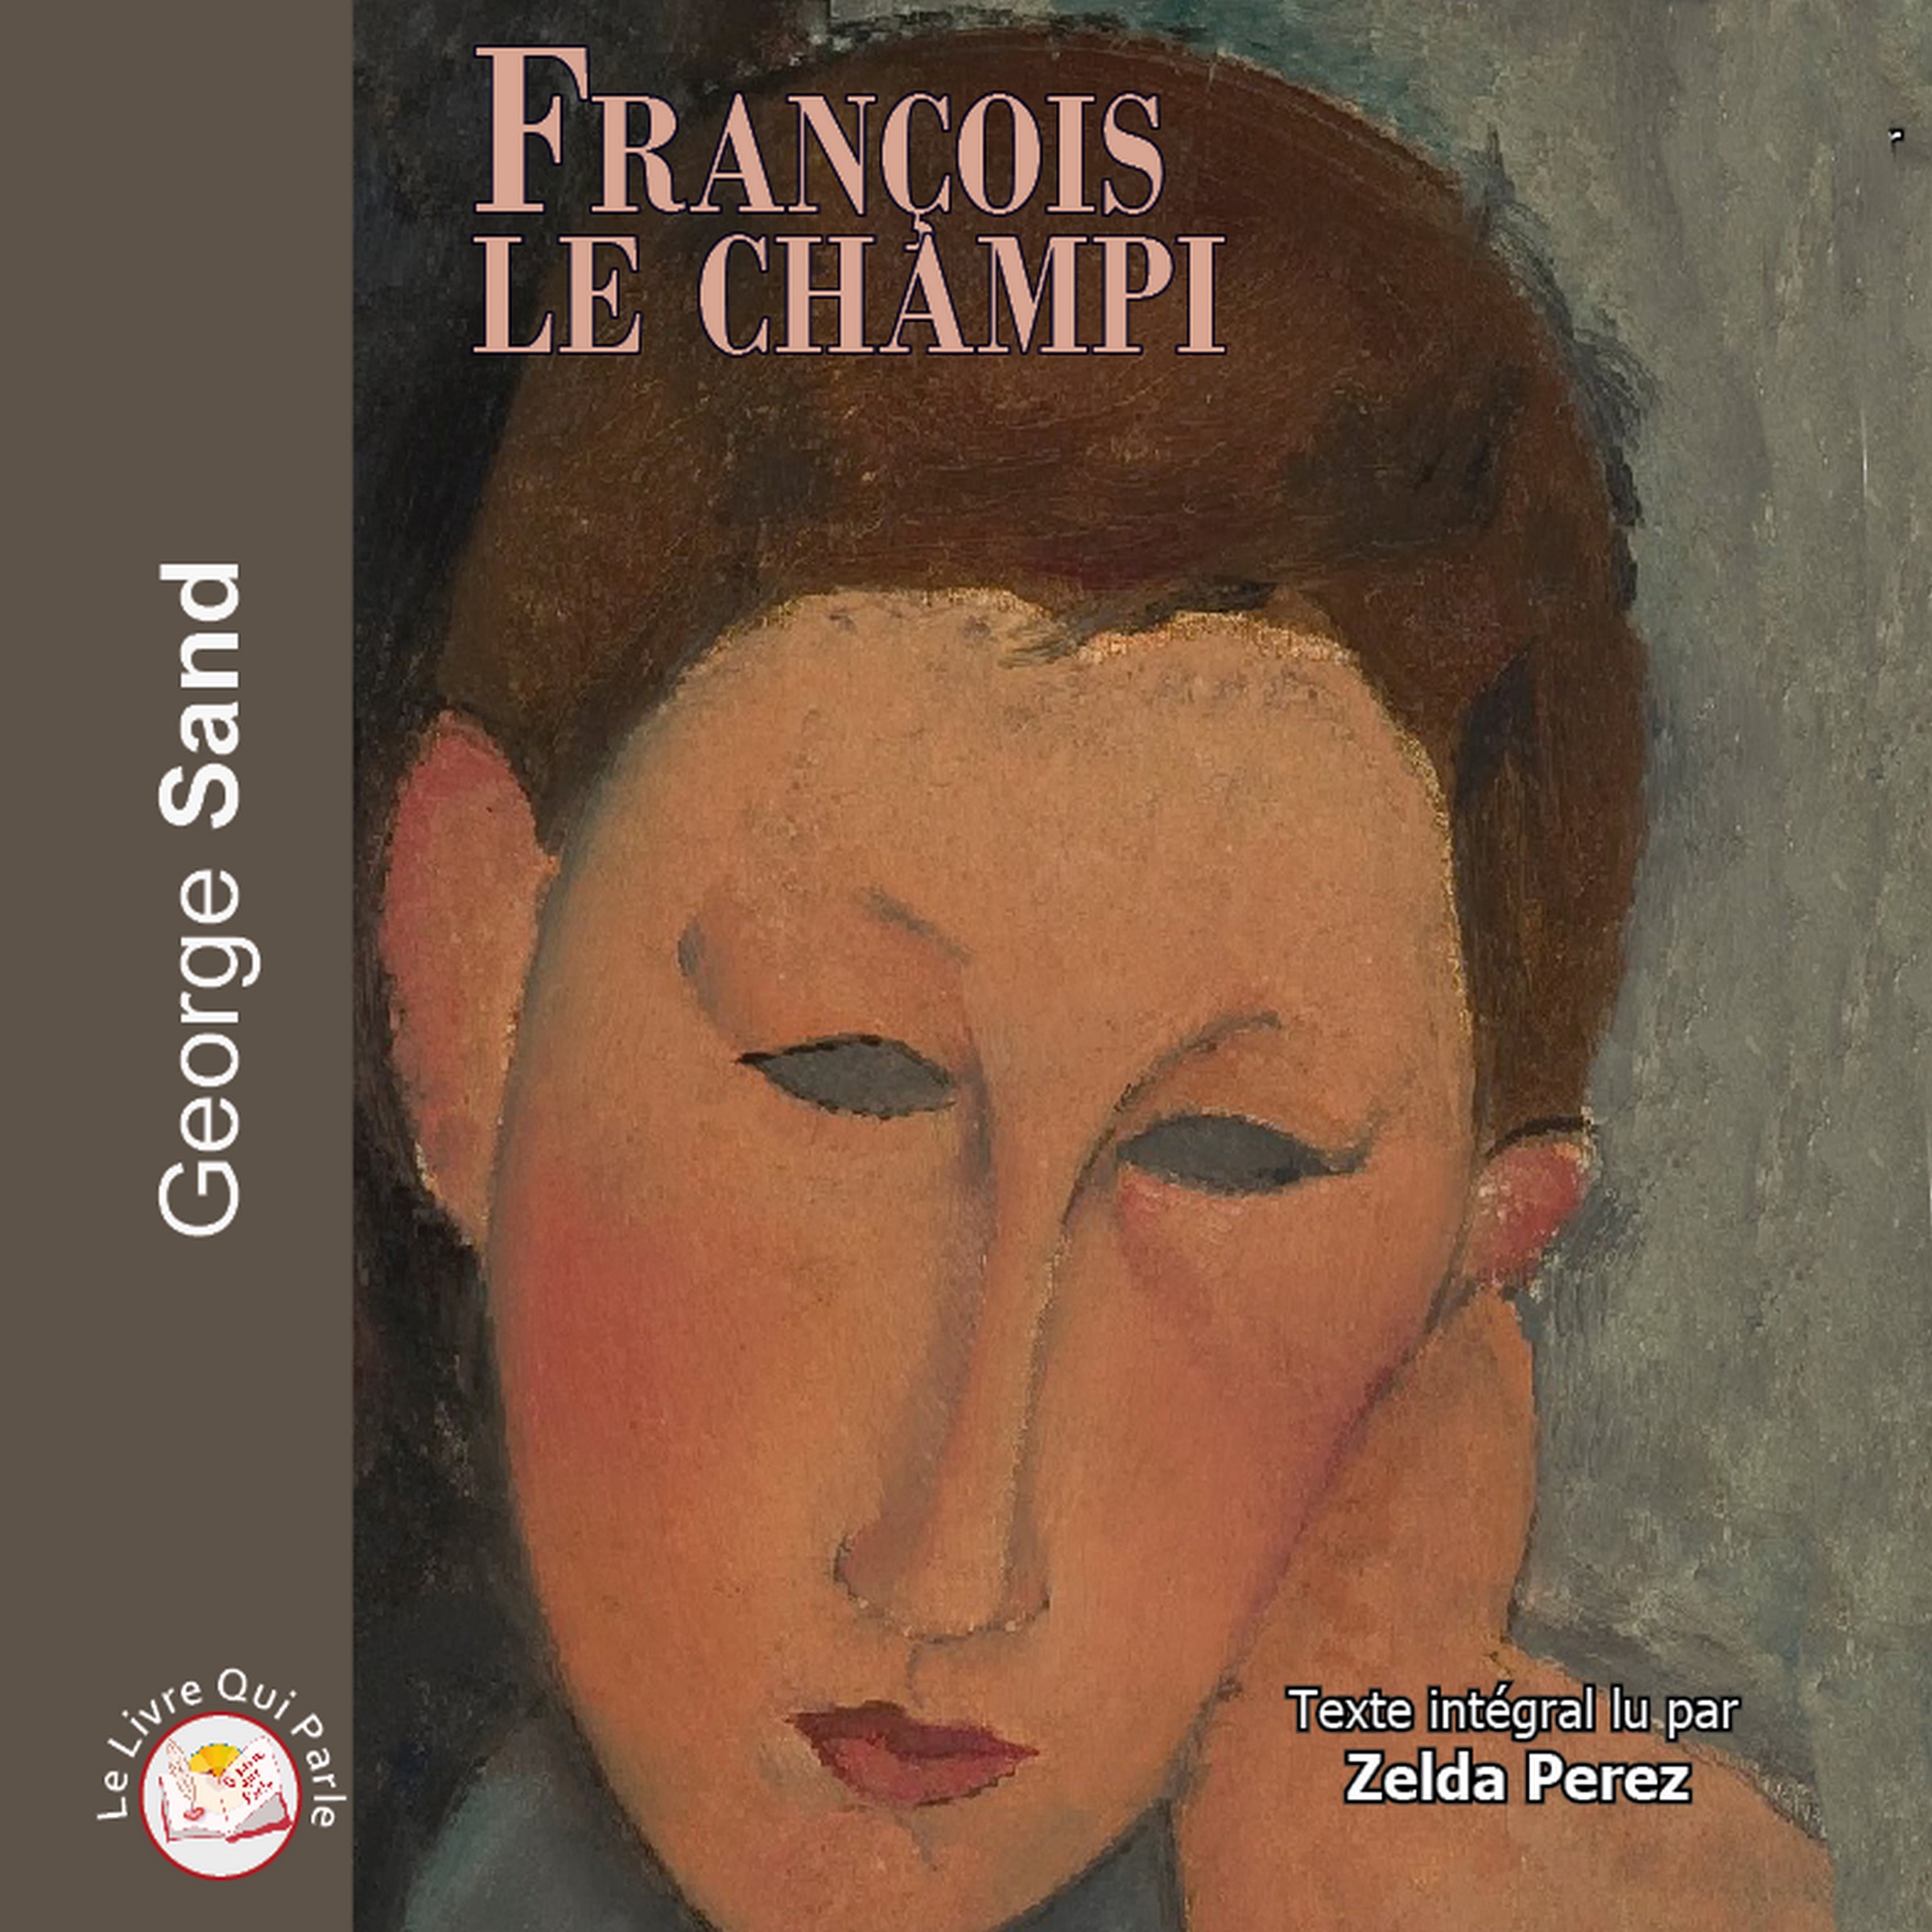 Couverture du livre audio François le champi De George Sand 